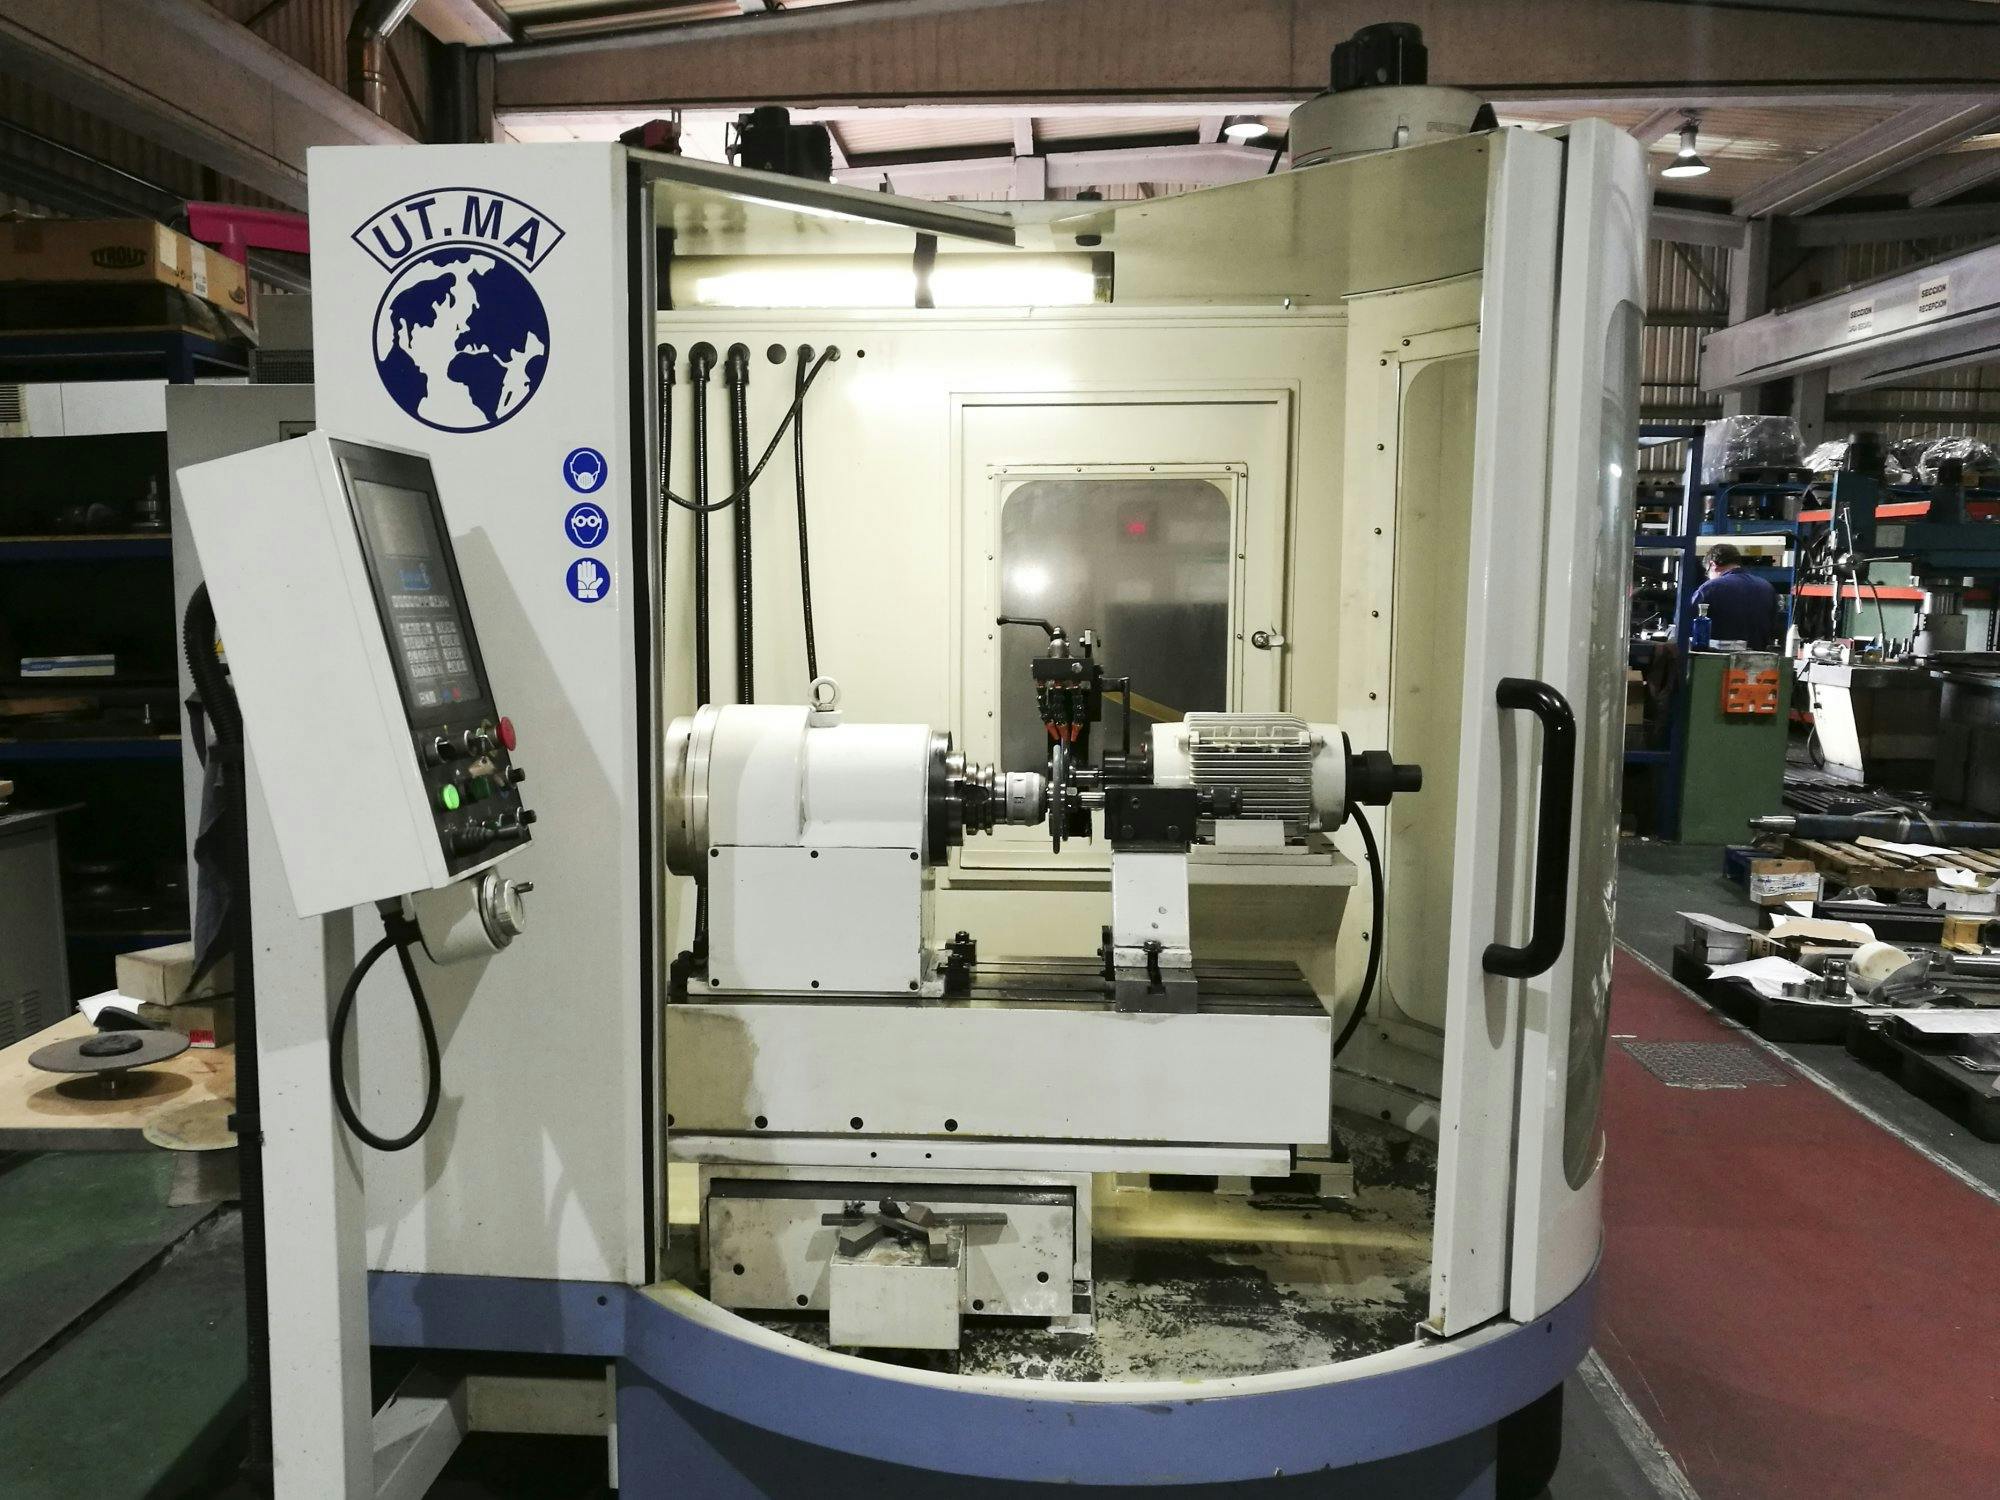 Prikaz  stroja UT.MA P20 CNC sprijeda